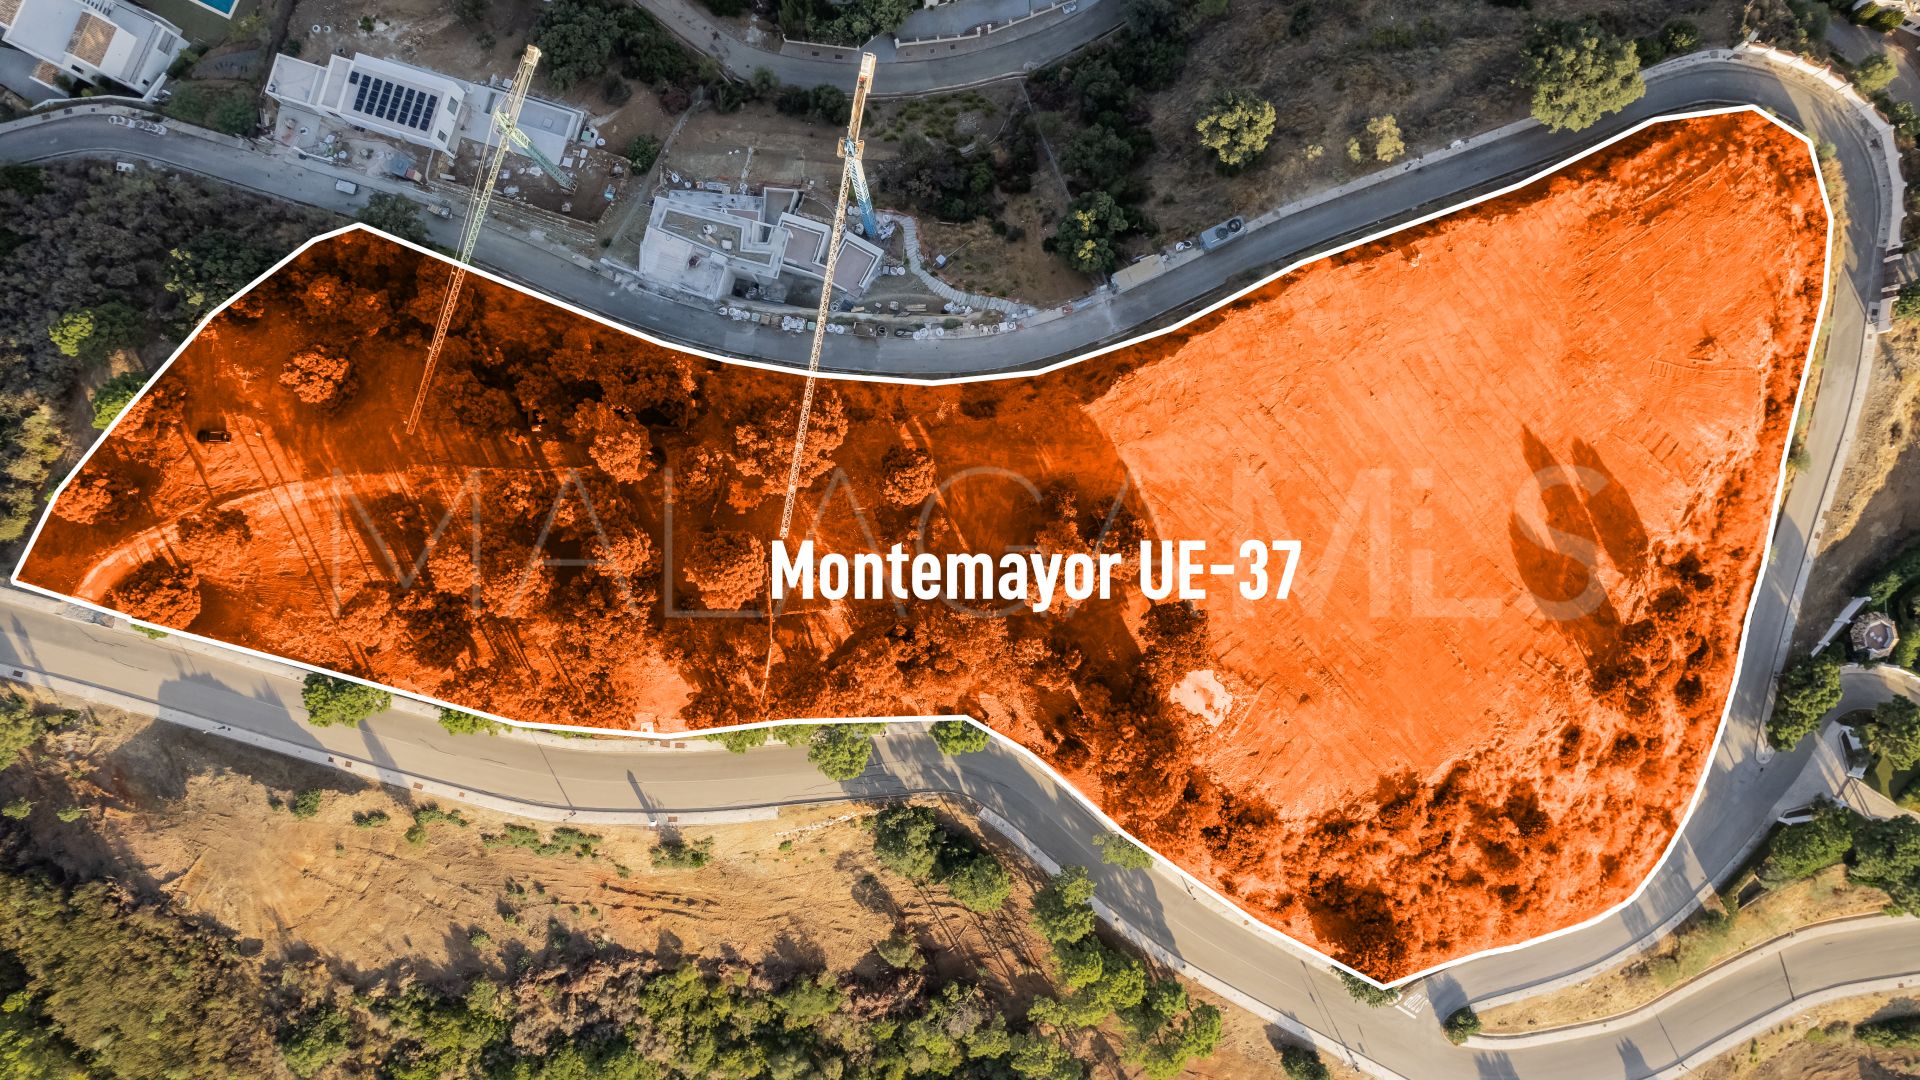 Terrain for sale in Monte Mayor